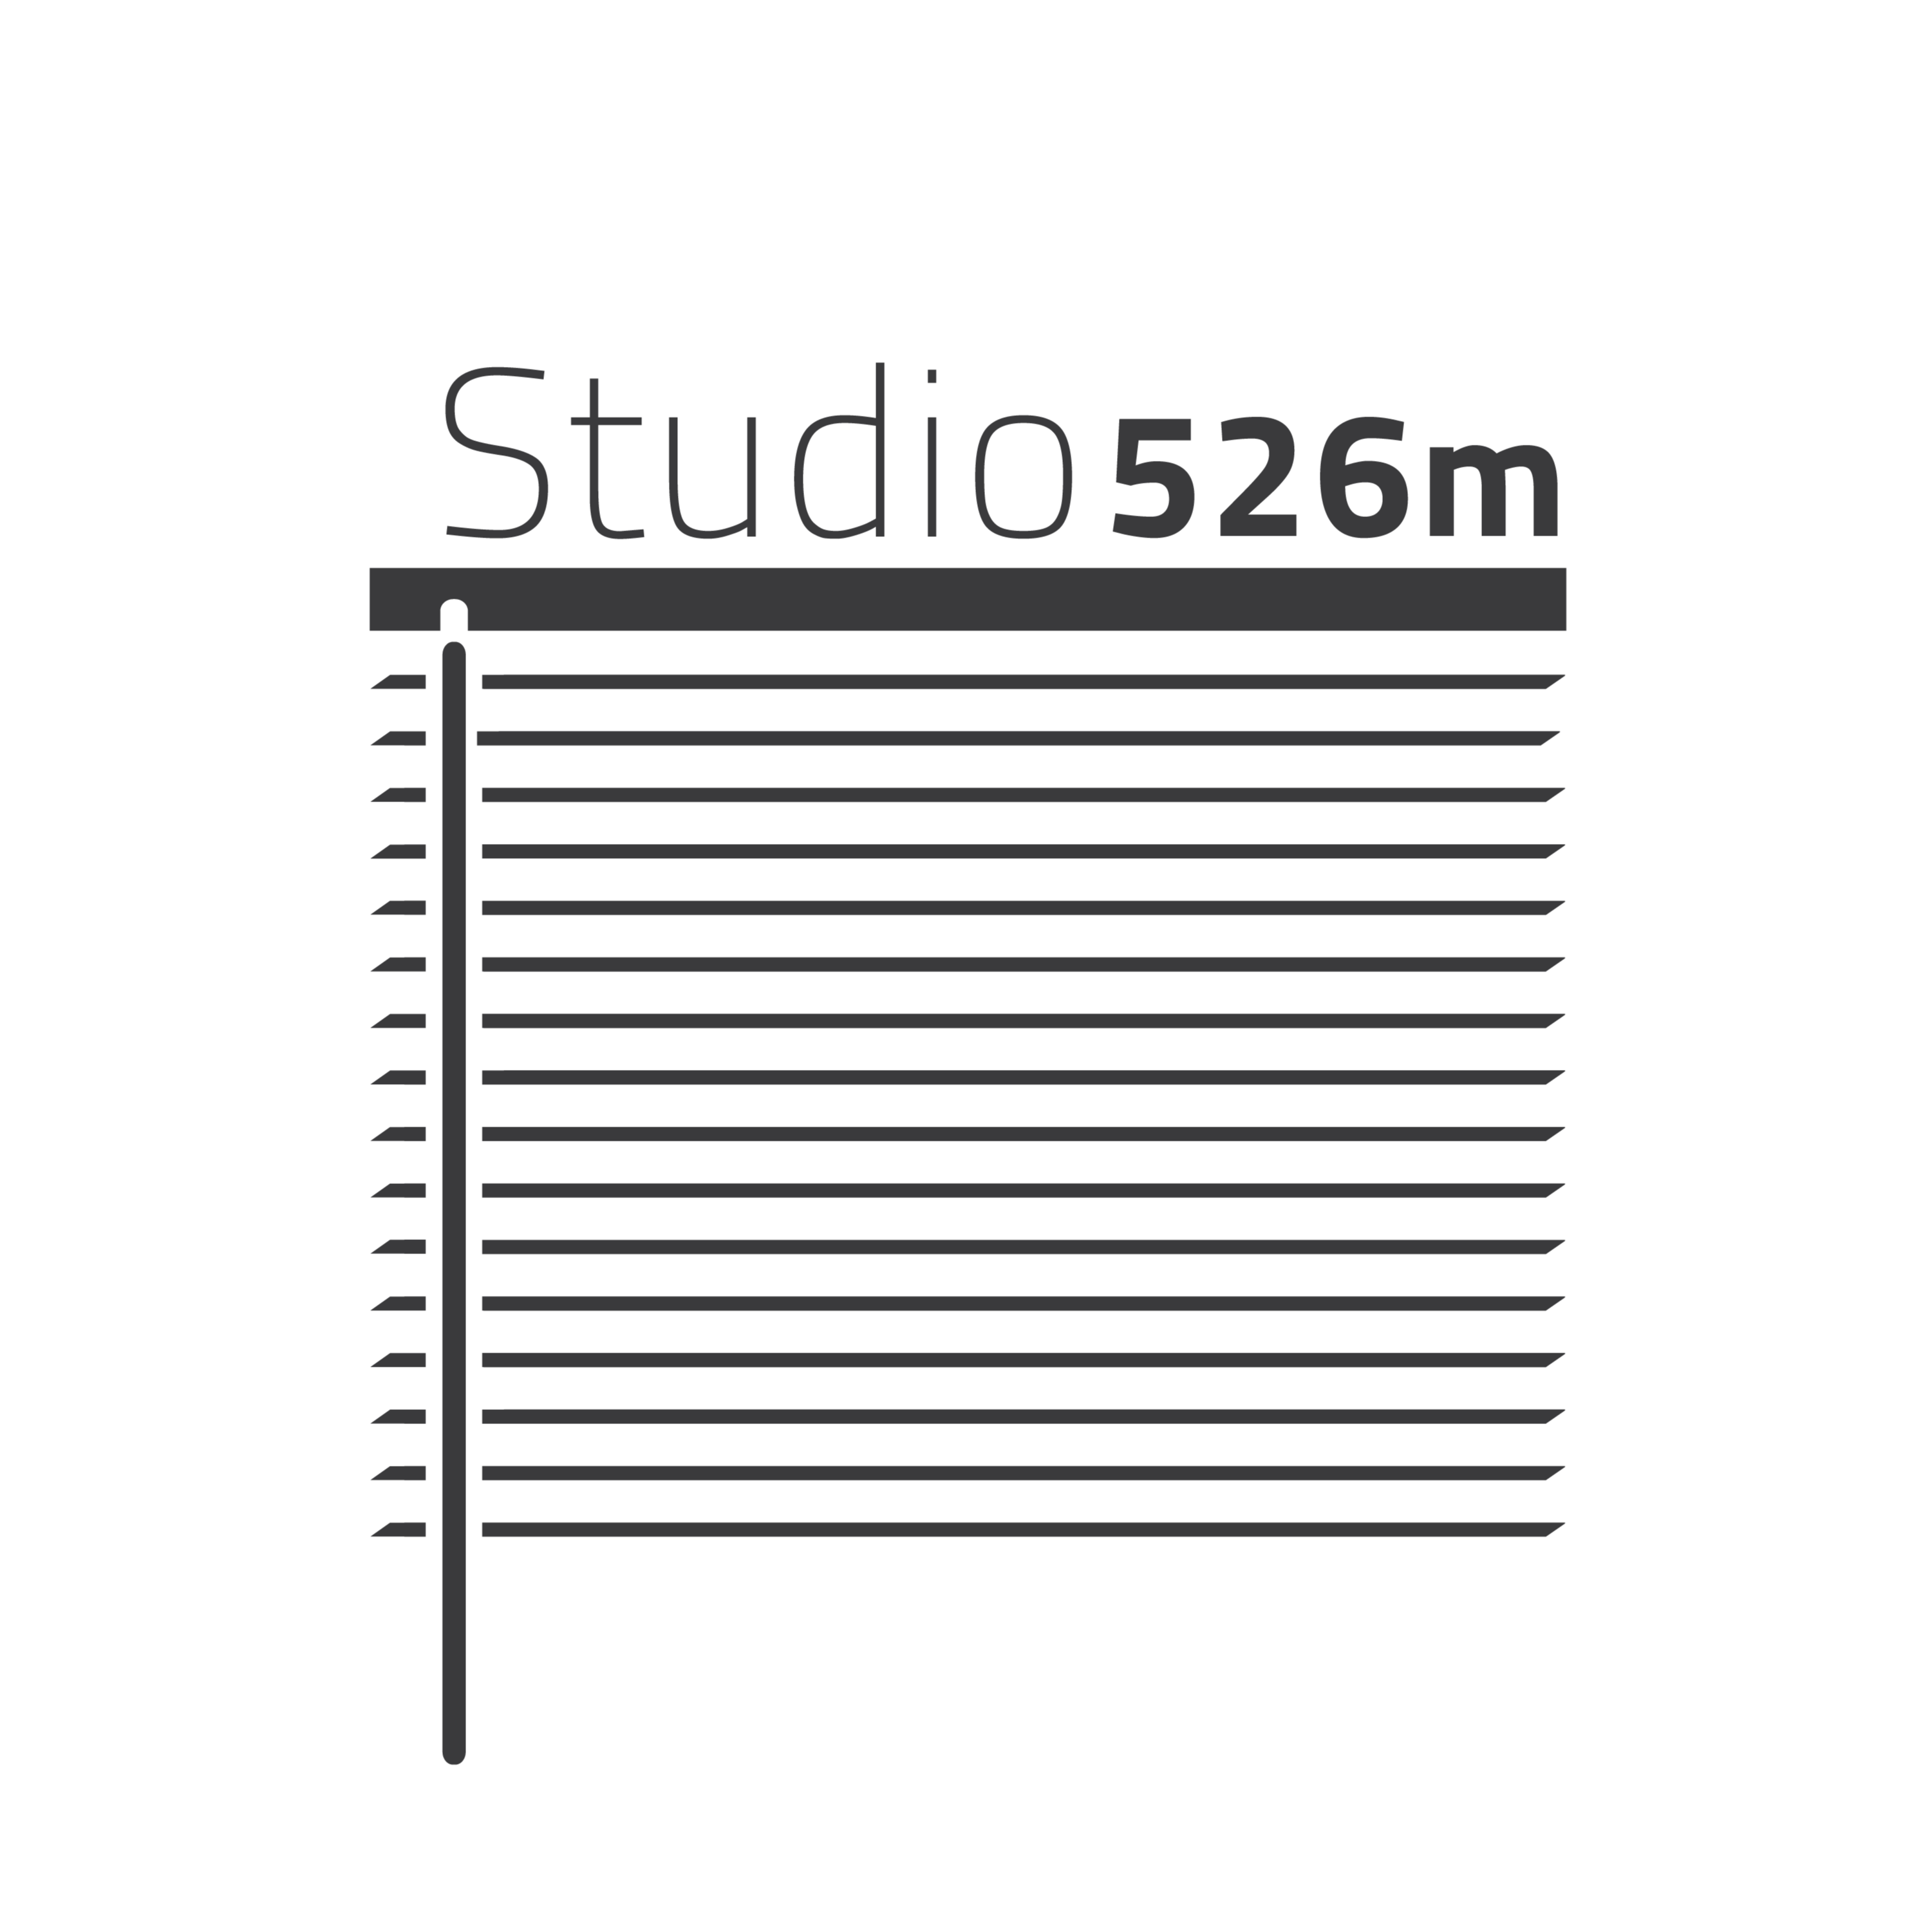 Studio 526m V2